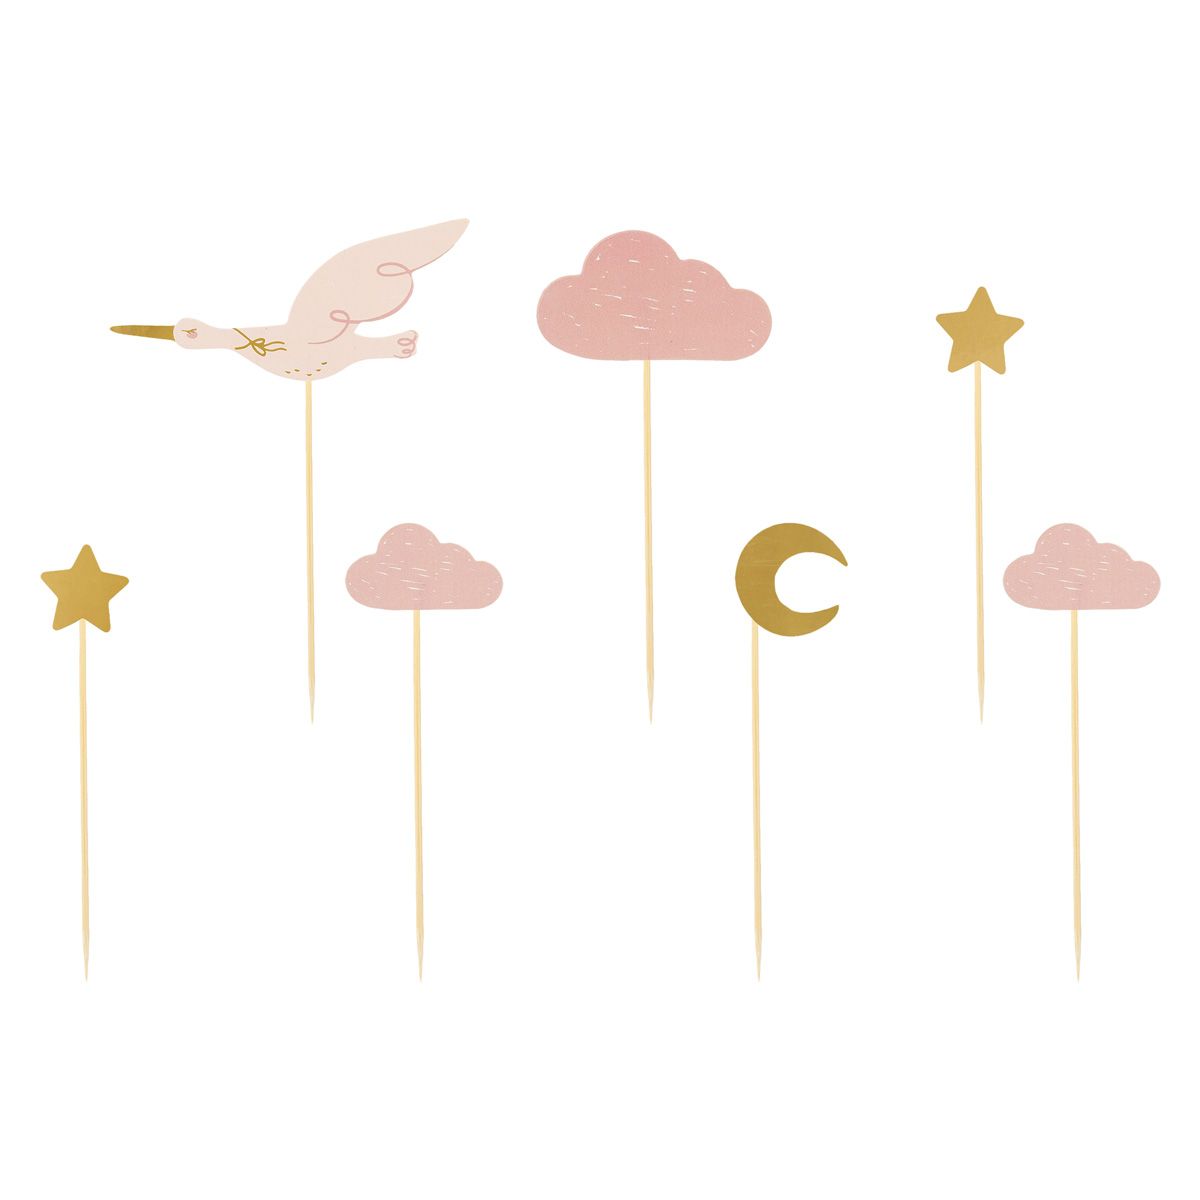 Cske topper I form av en rosa stork, moln, stjärnor och måne